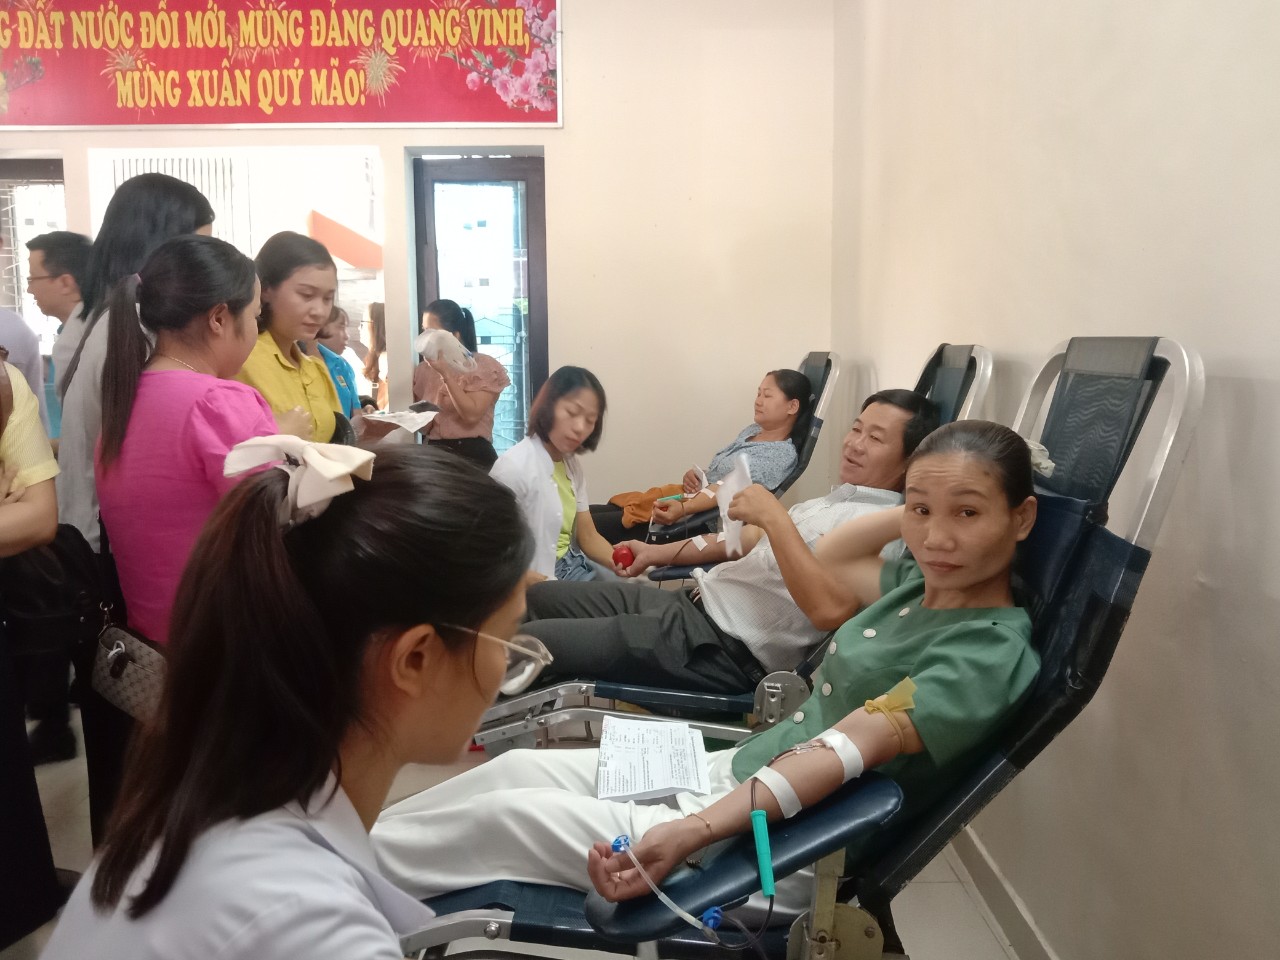 Phong trào hiên máu tình nguyện được các tầng lớp nhân dân trên địa bàn thị xã Hương Trà hưởng ứng tích cực, tạo sức lan tỏa mạnh mẽ trong cộng đồng về tính nhân đạo.